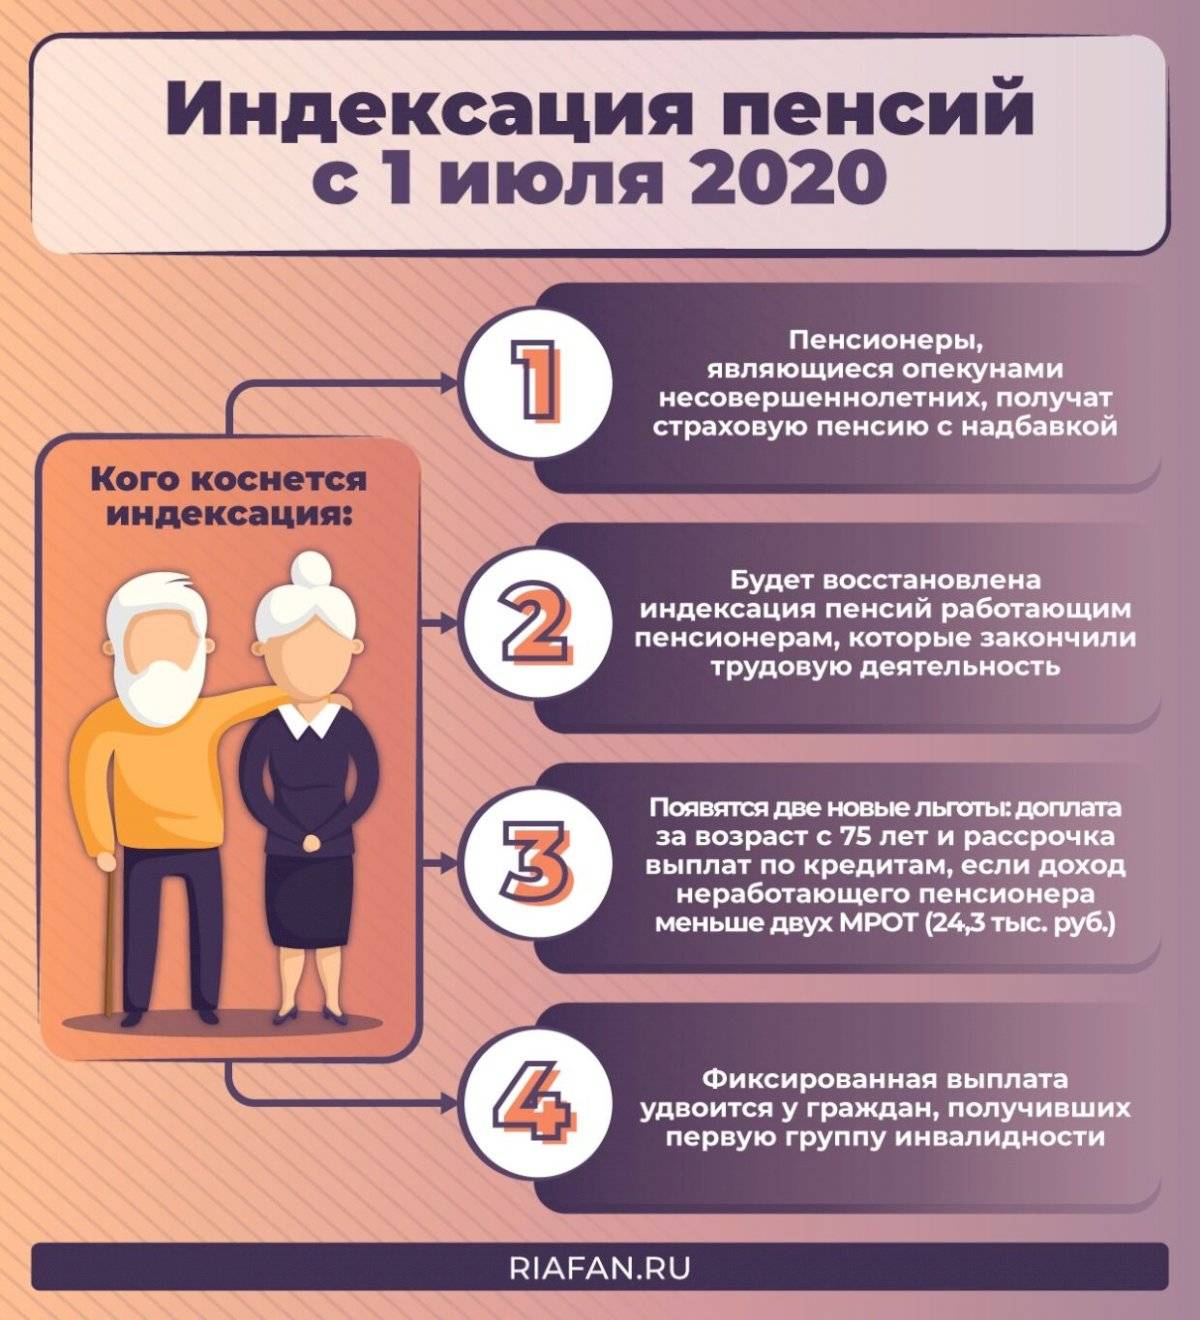 Какие льготы положены пенсионерам после 80 лет в россии